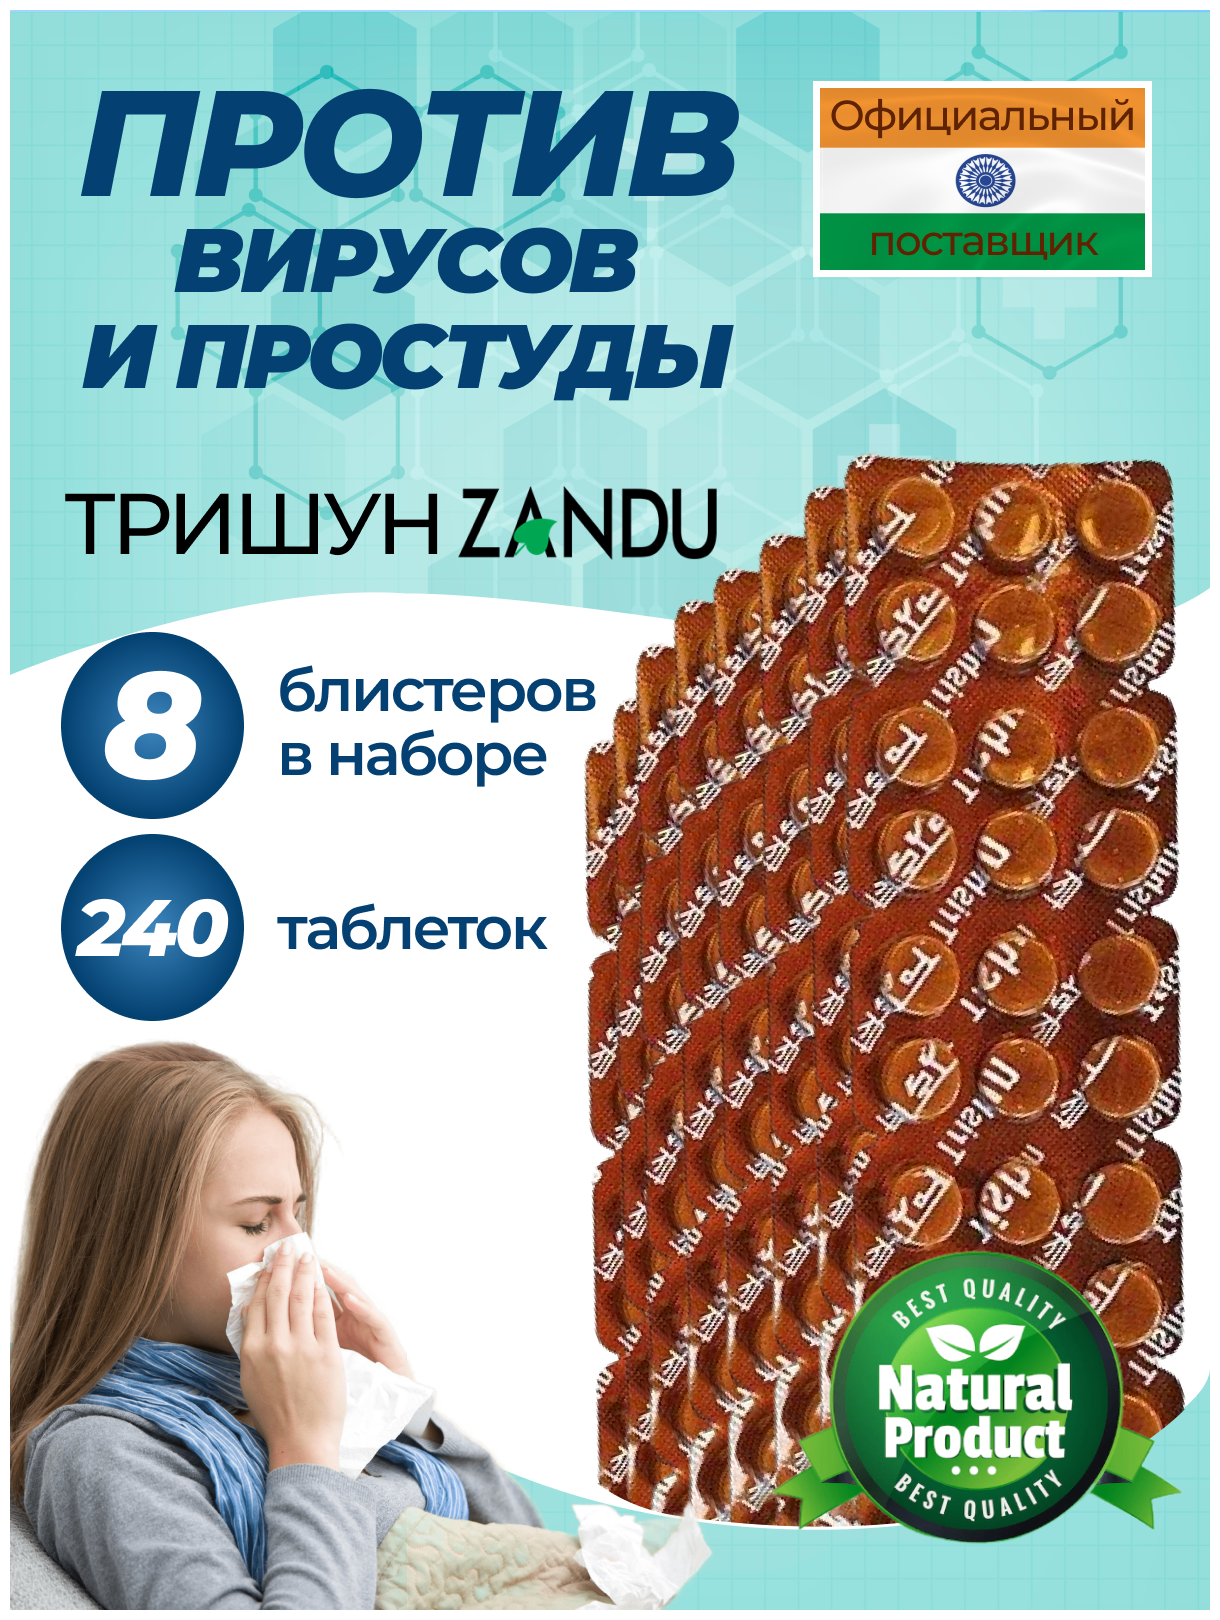 Противовирусный препарат Тришун Занду (Trishun Zandu) против простуды гриппа насморка и температуры для укрепления иммунитета 240 таблеток